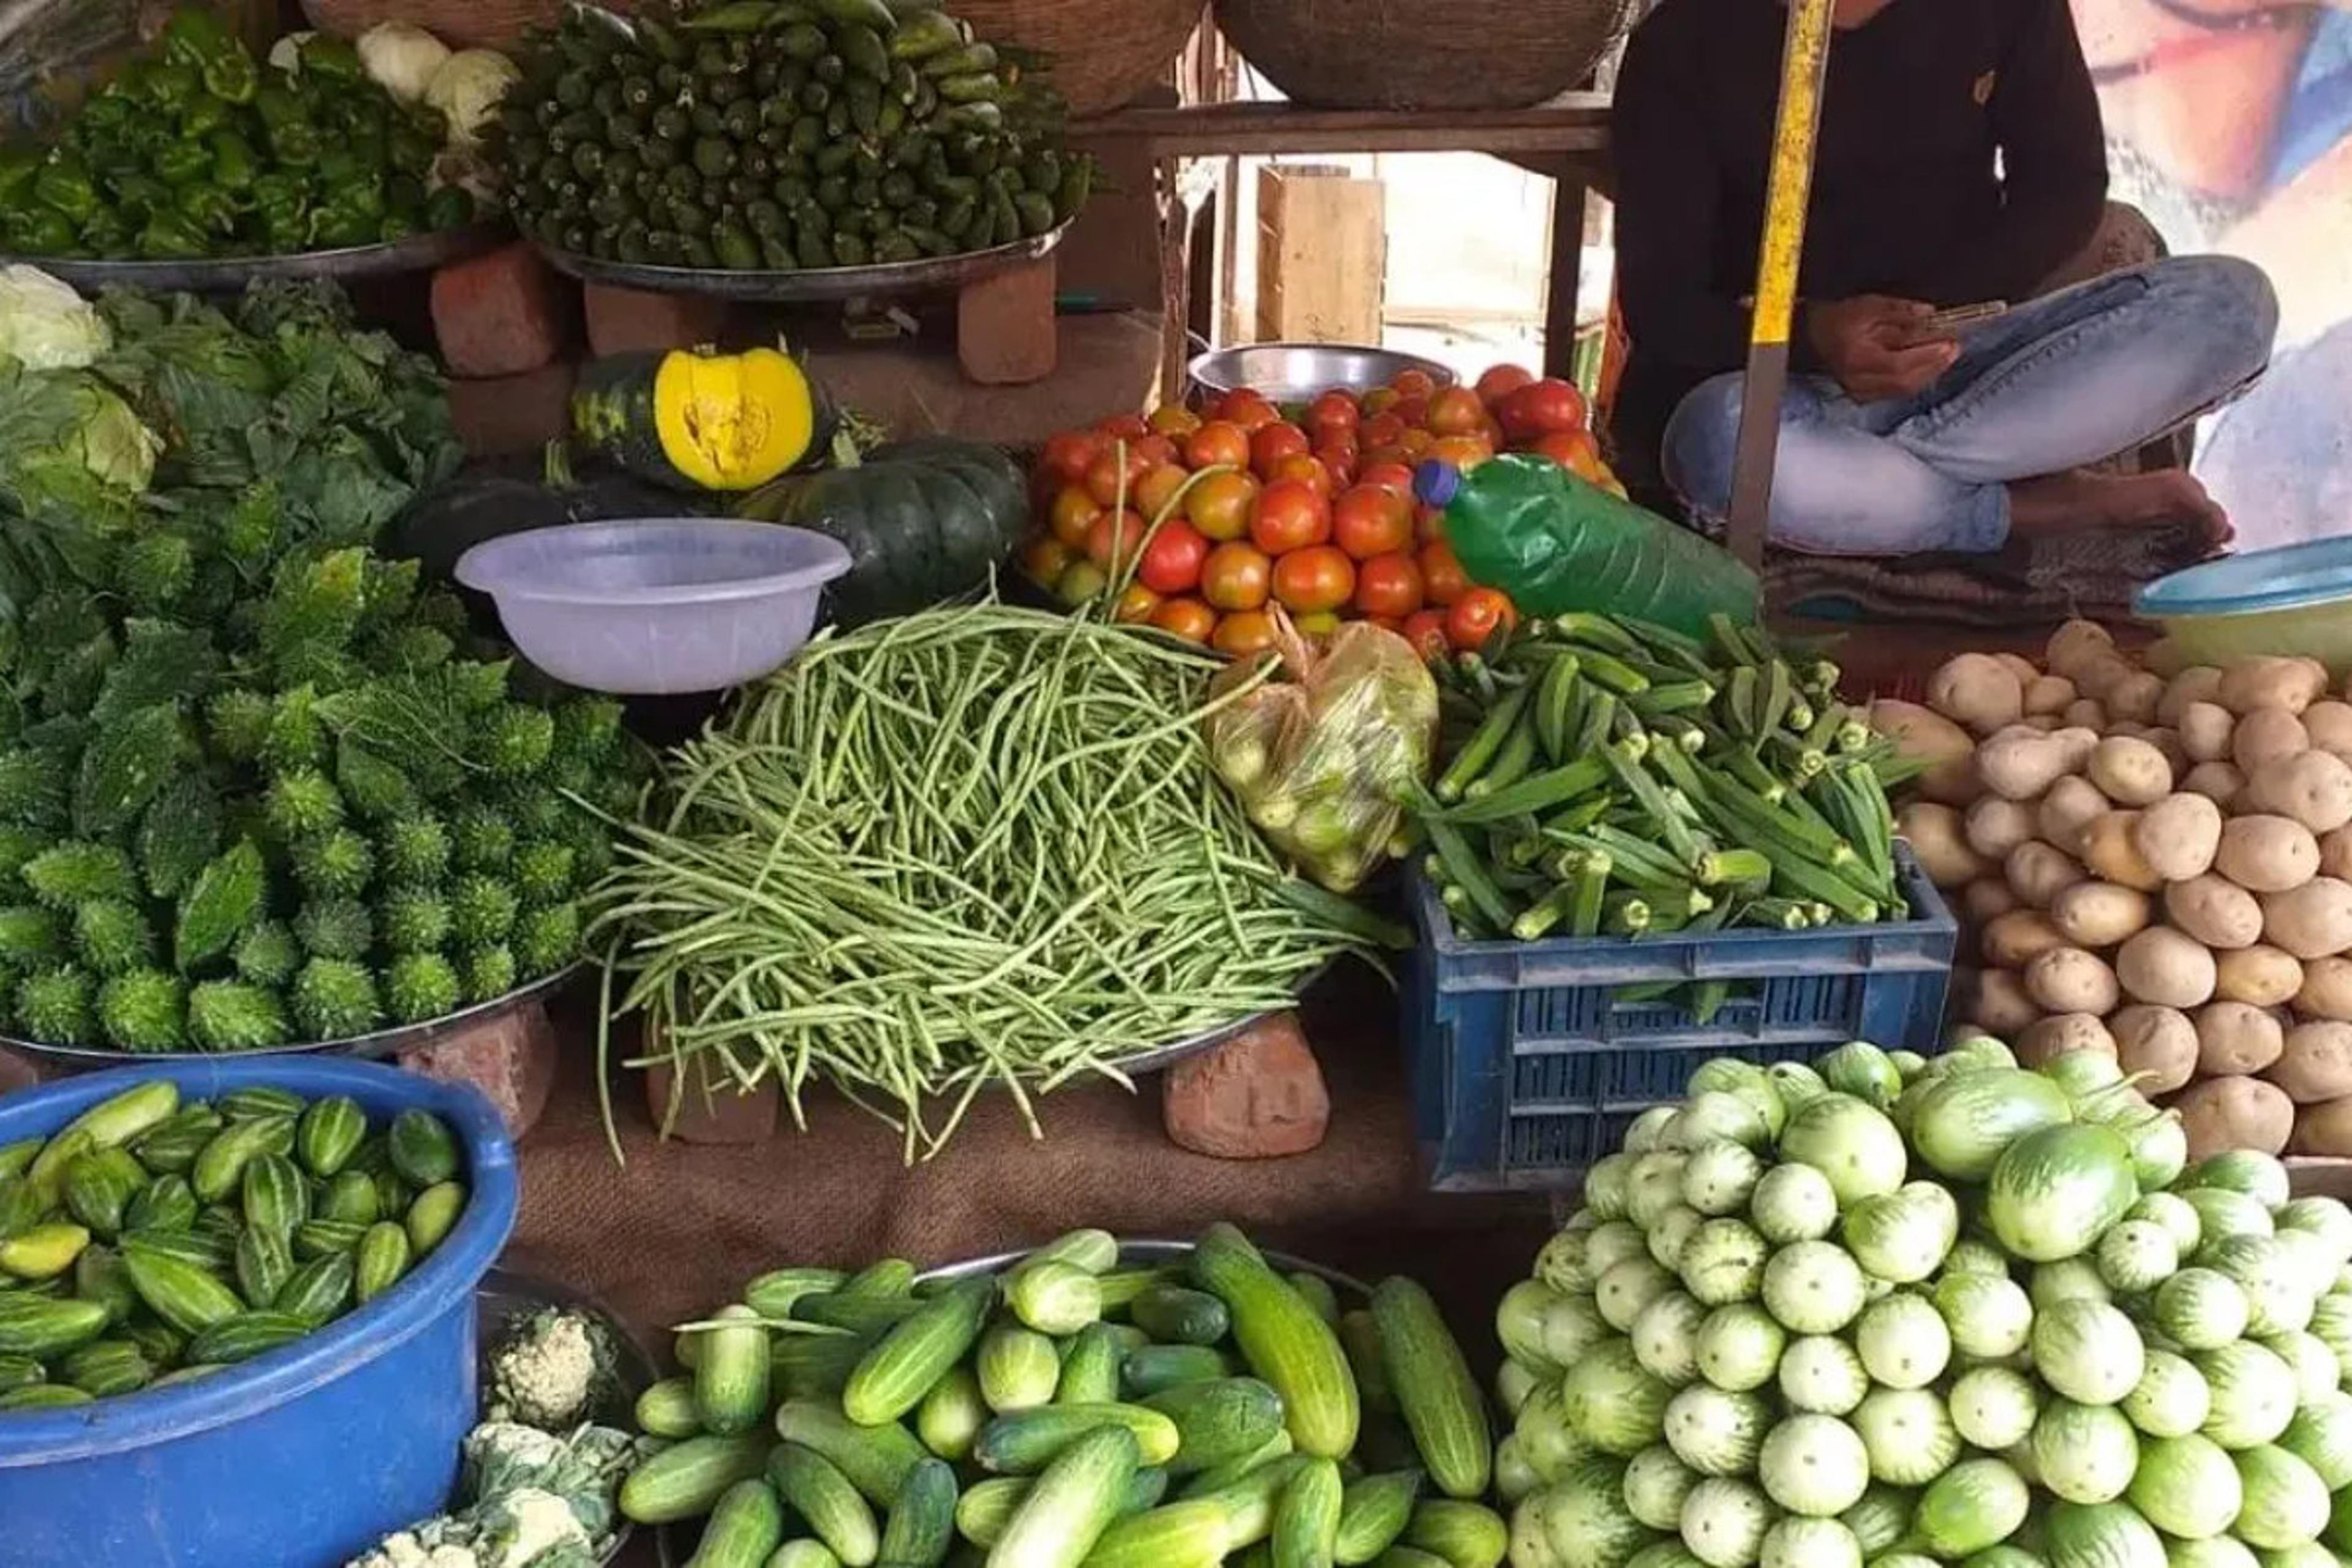 Vegtable Price Today: सब्जियों के भाव बढ़ने से बिगड़ा घर का बजट, आलू भी हुआ
महंगा, जानिए भाव